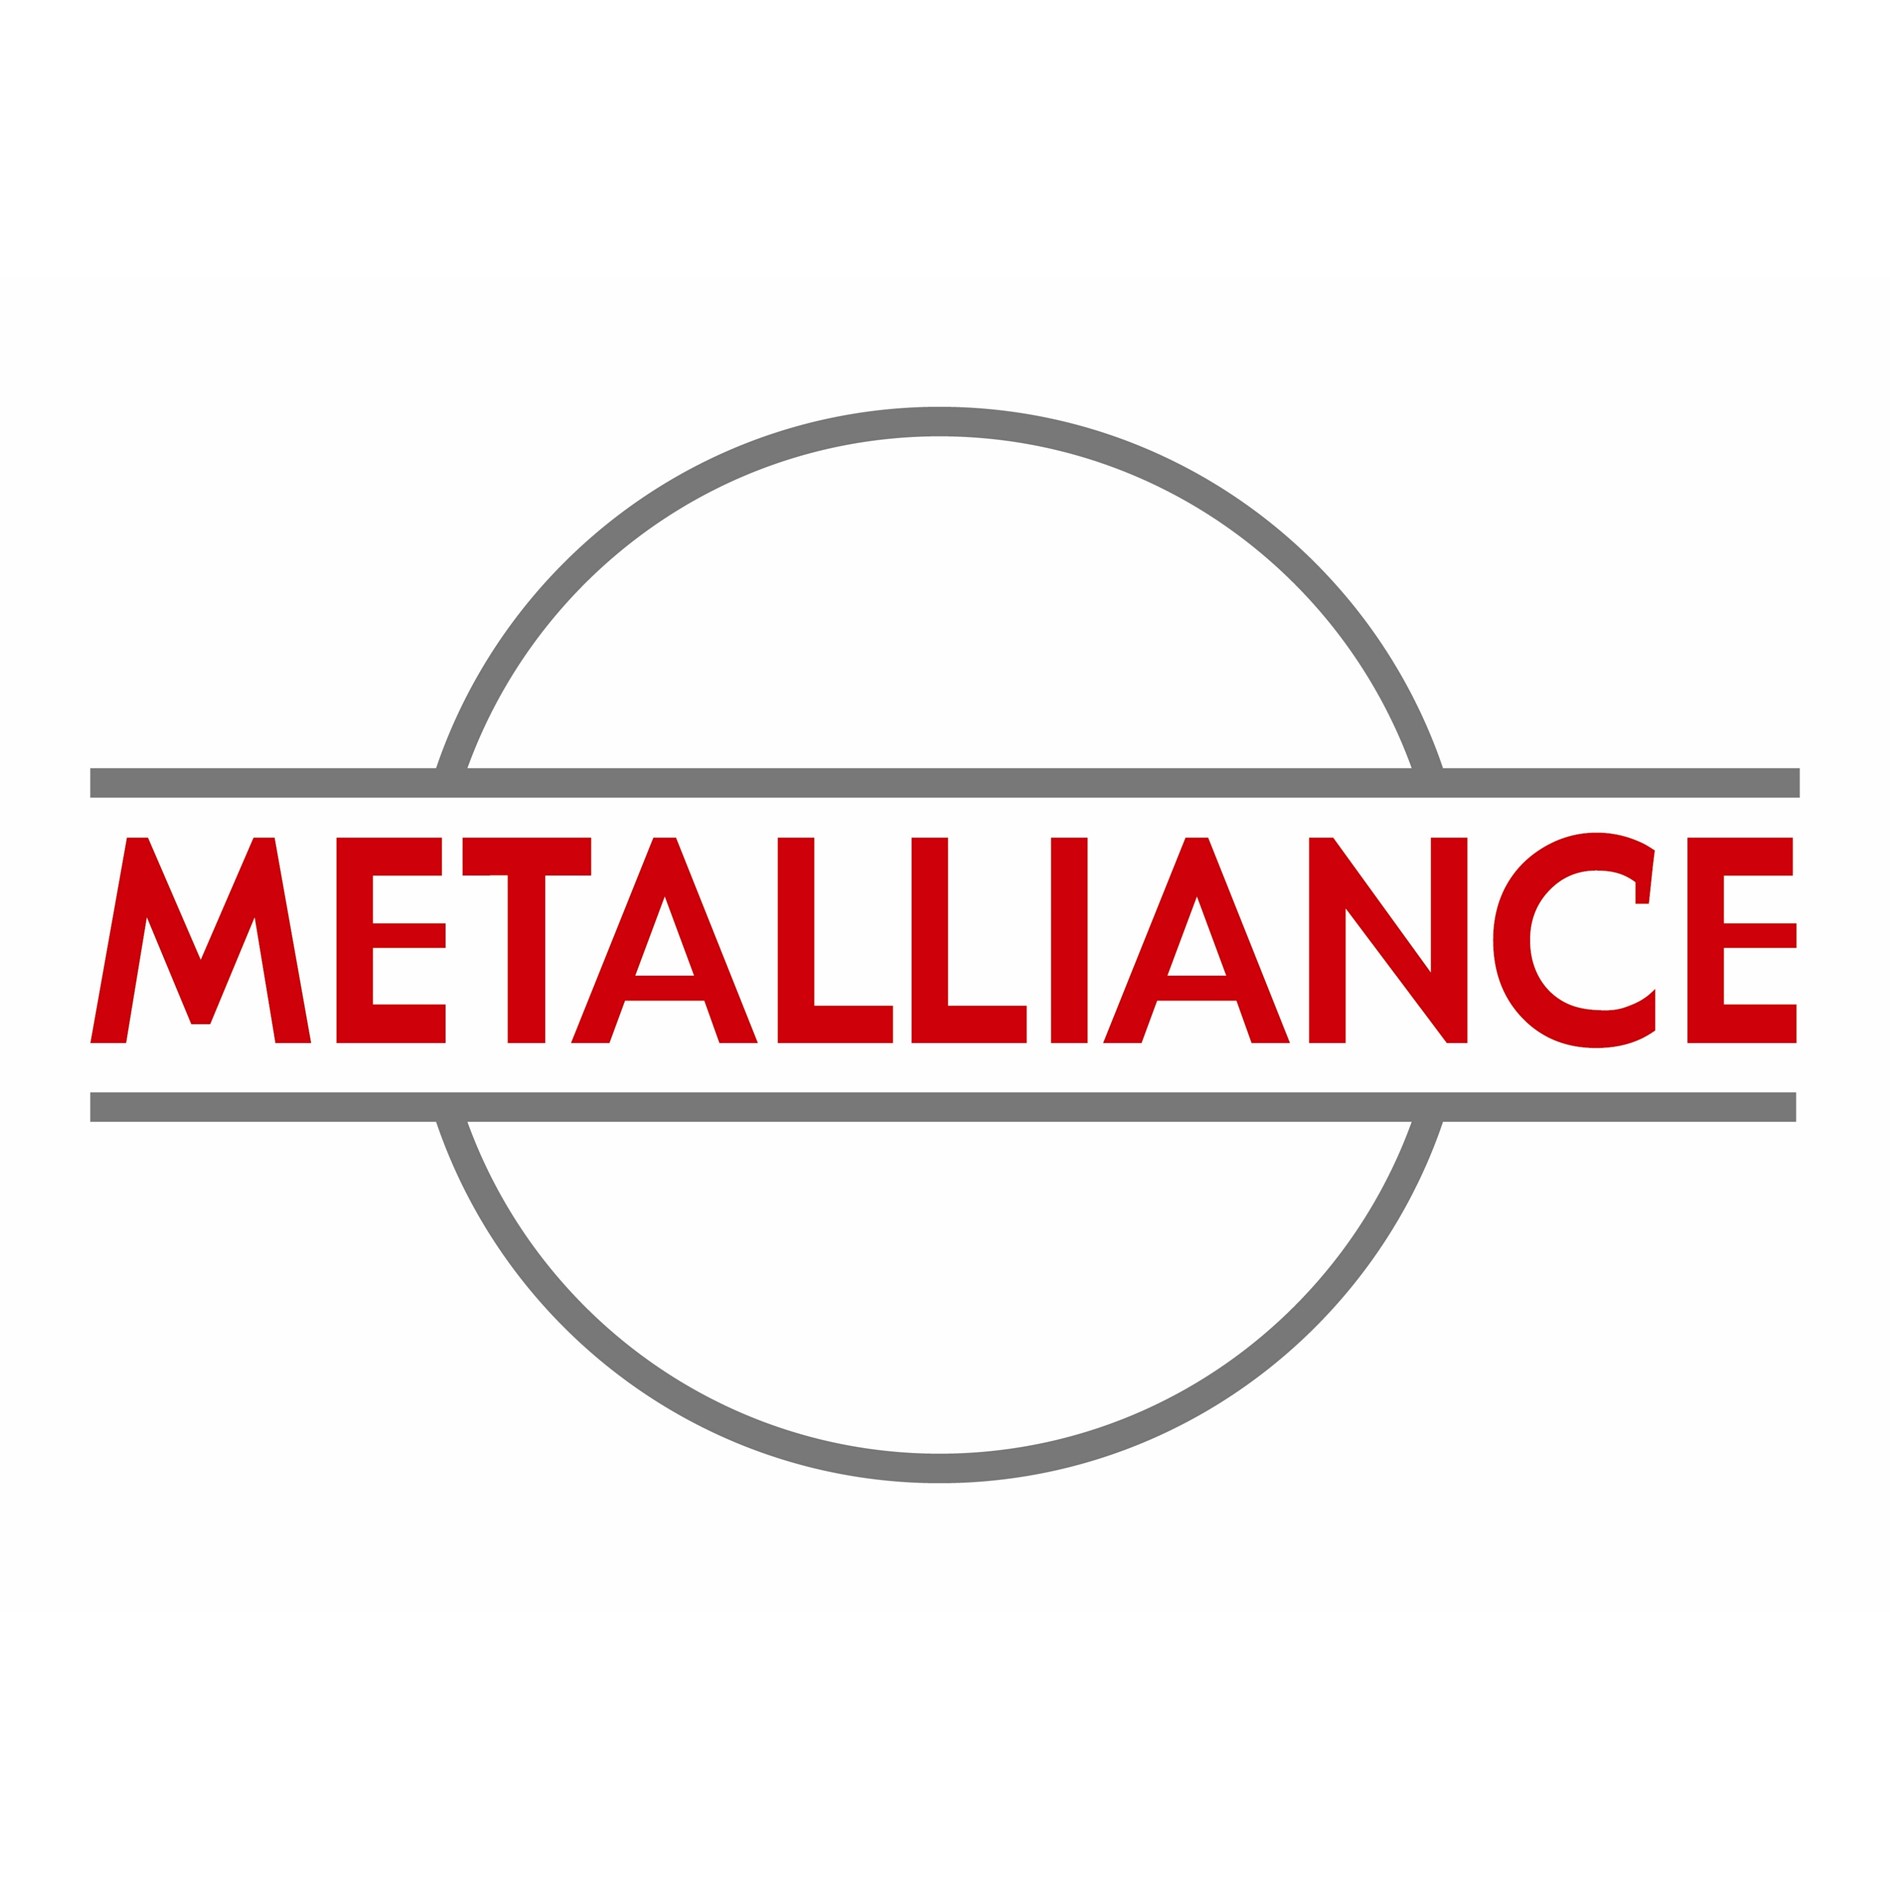 Metalliance